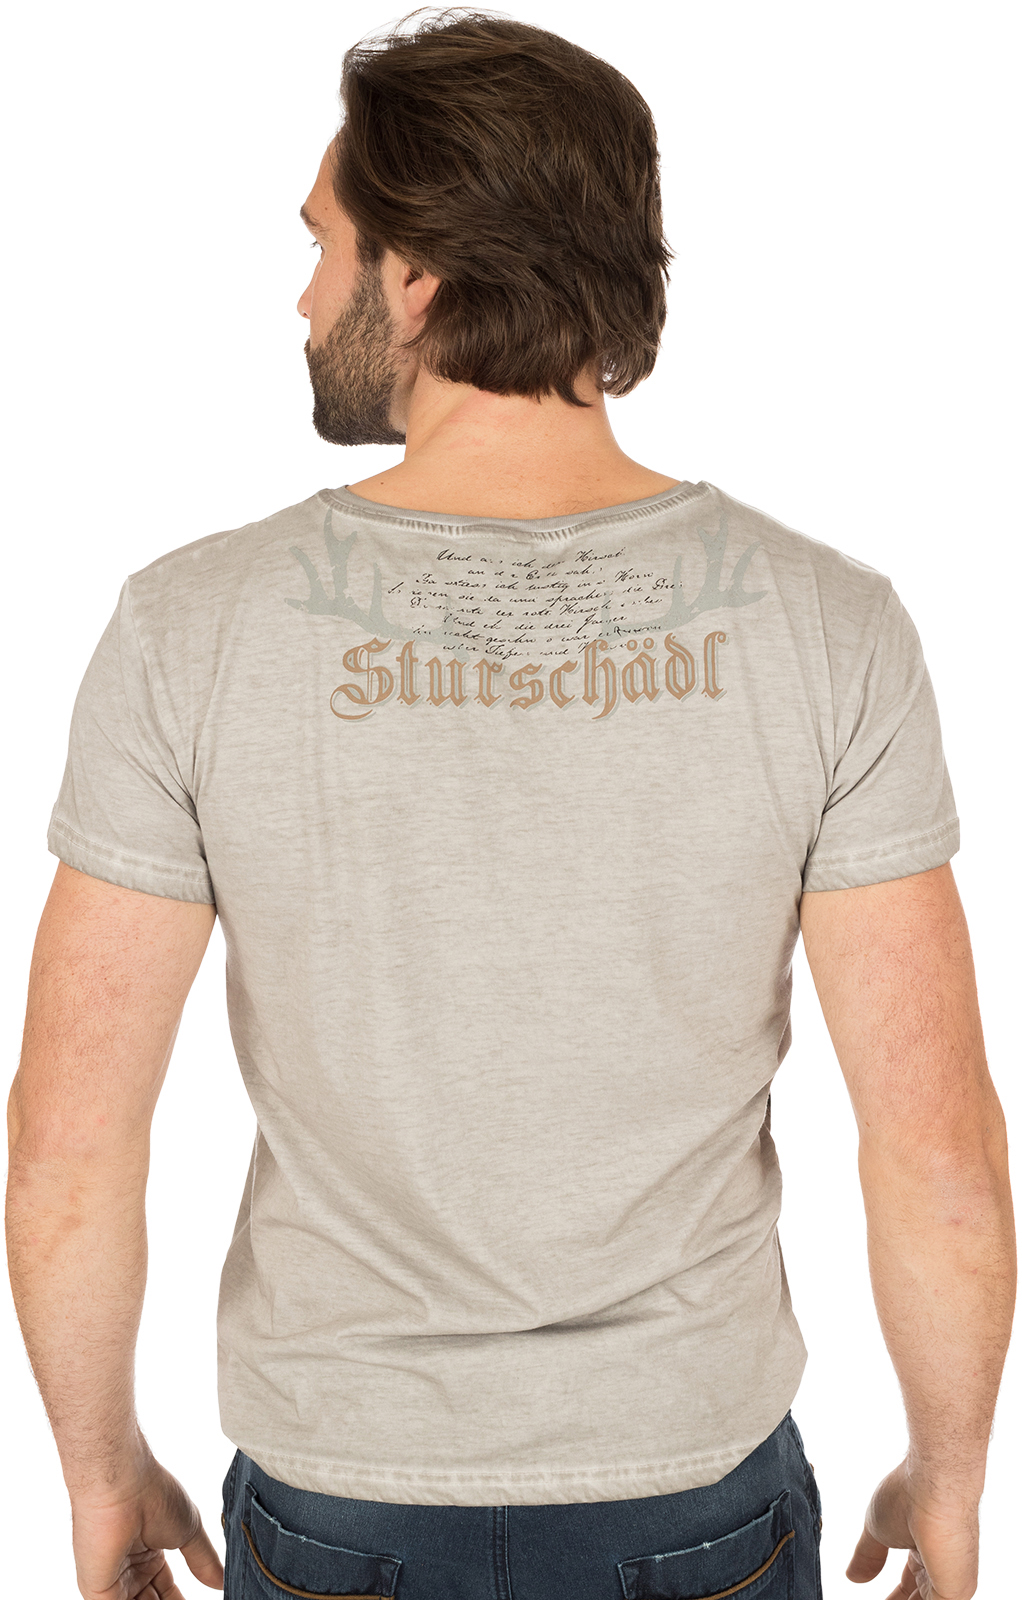 weitere Bilder von Traditional German T-Shirt STURSCHAEDL gray